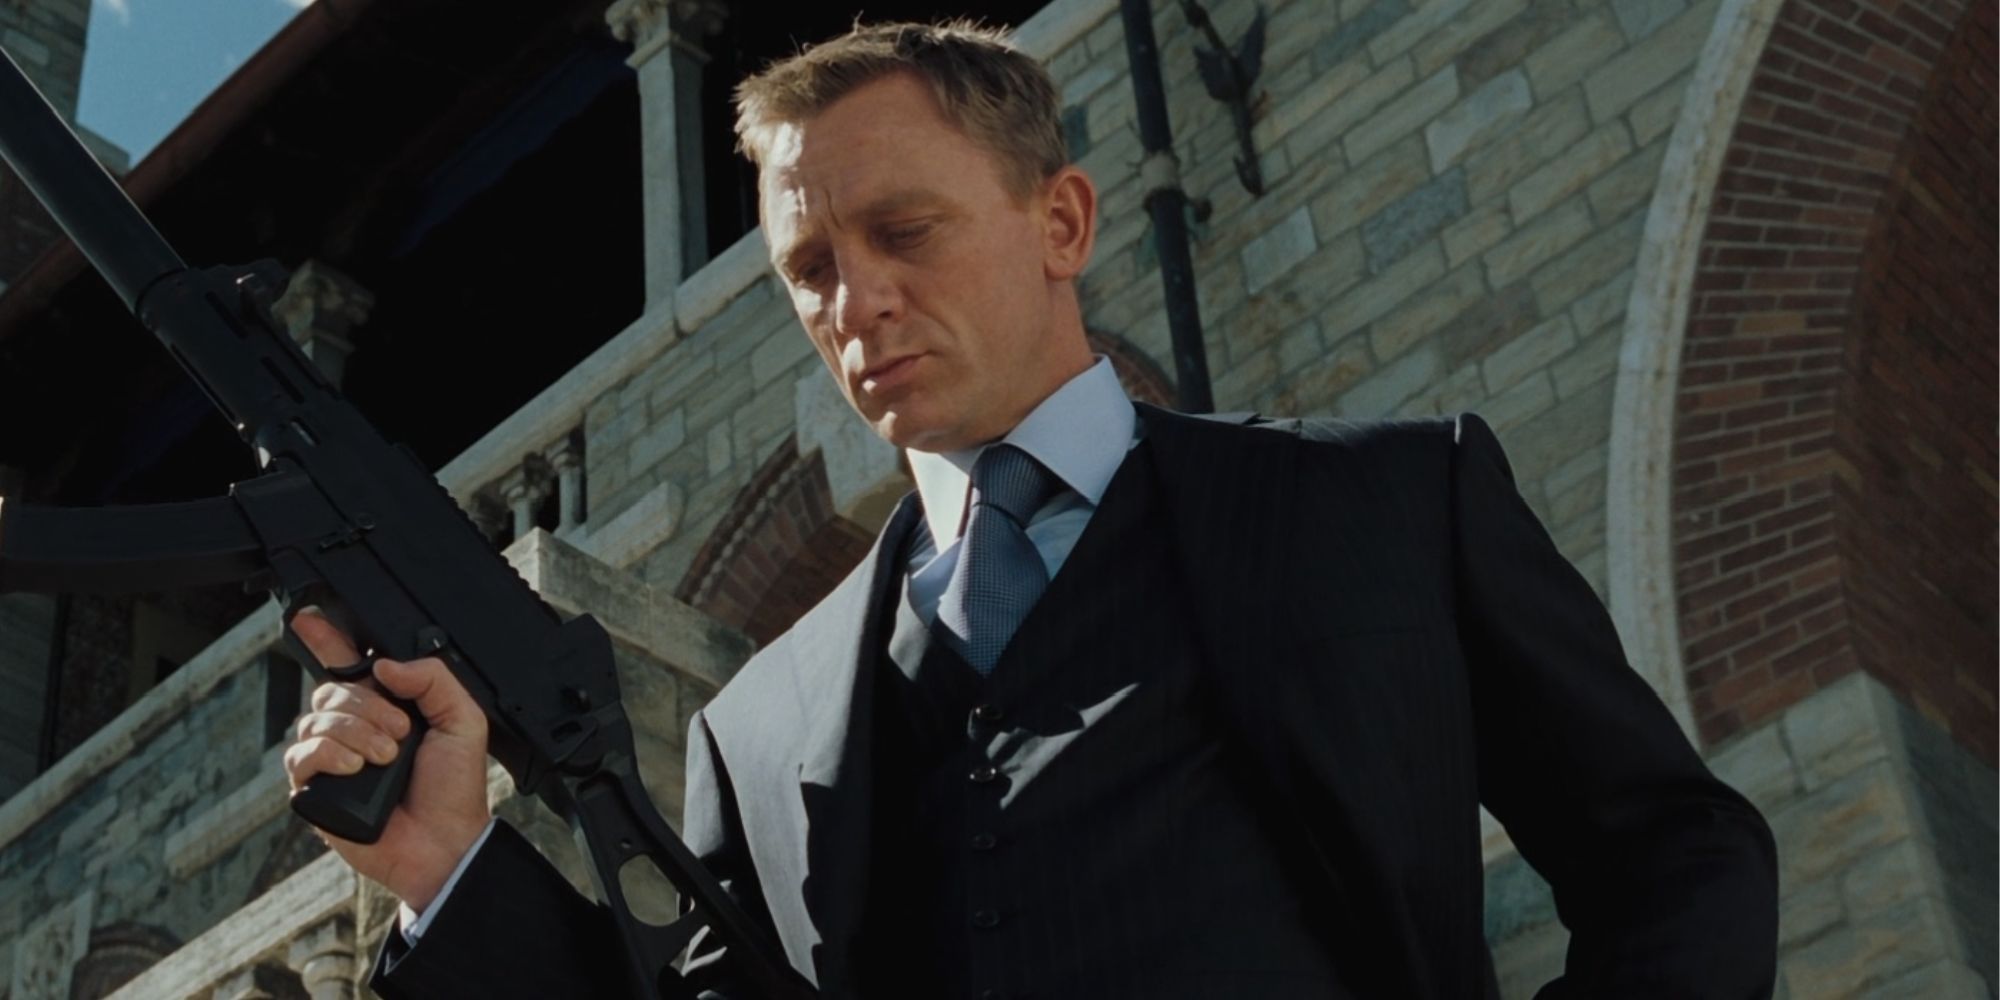 Daniel Craig as James Bond casually holding a gun in Casino Royale